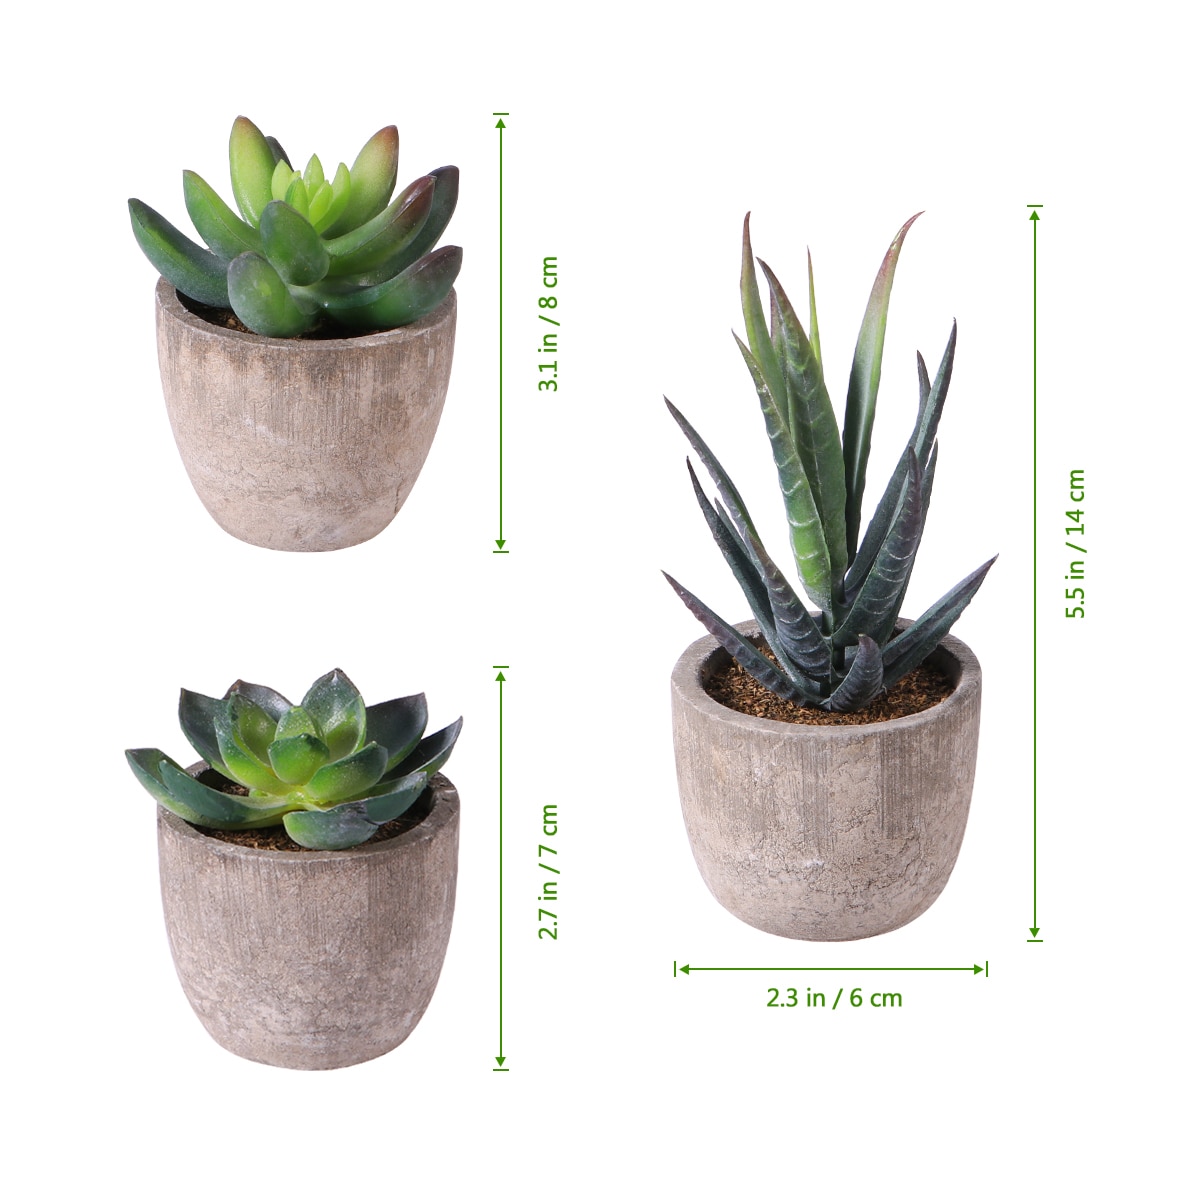 Decorative Artificial Succulent Plants With Pots